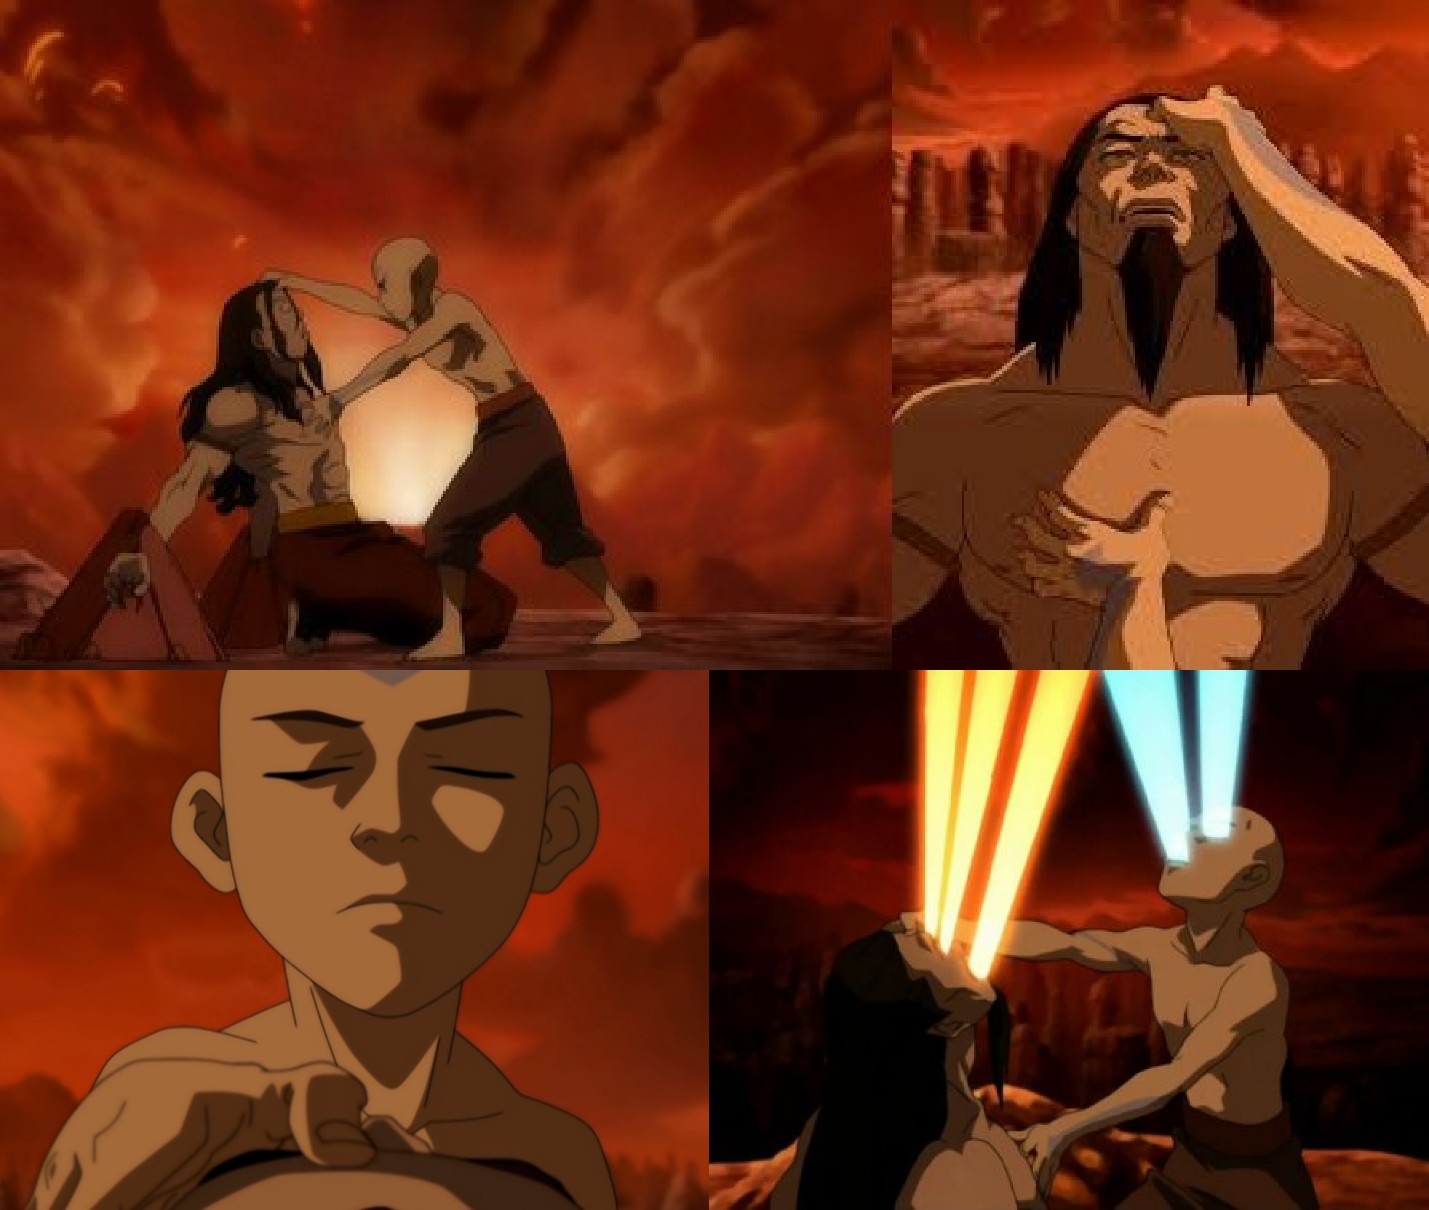 Ai là fan của Avatar: The Last Airbender? Nếu bạn là một trong số đó, thì bạn không thể bỏ qua template meme Aang Ozai Battle. Với những hình ảnh và khung cảnh trận chiến hấp dẫn, bạn chỉ cần tưởng tượng và thêm chút sáng tạo để tạo ra những meme hài hước mà ai cũng sẽ yêu thích.